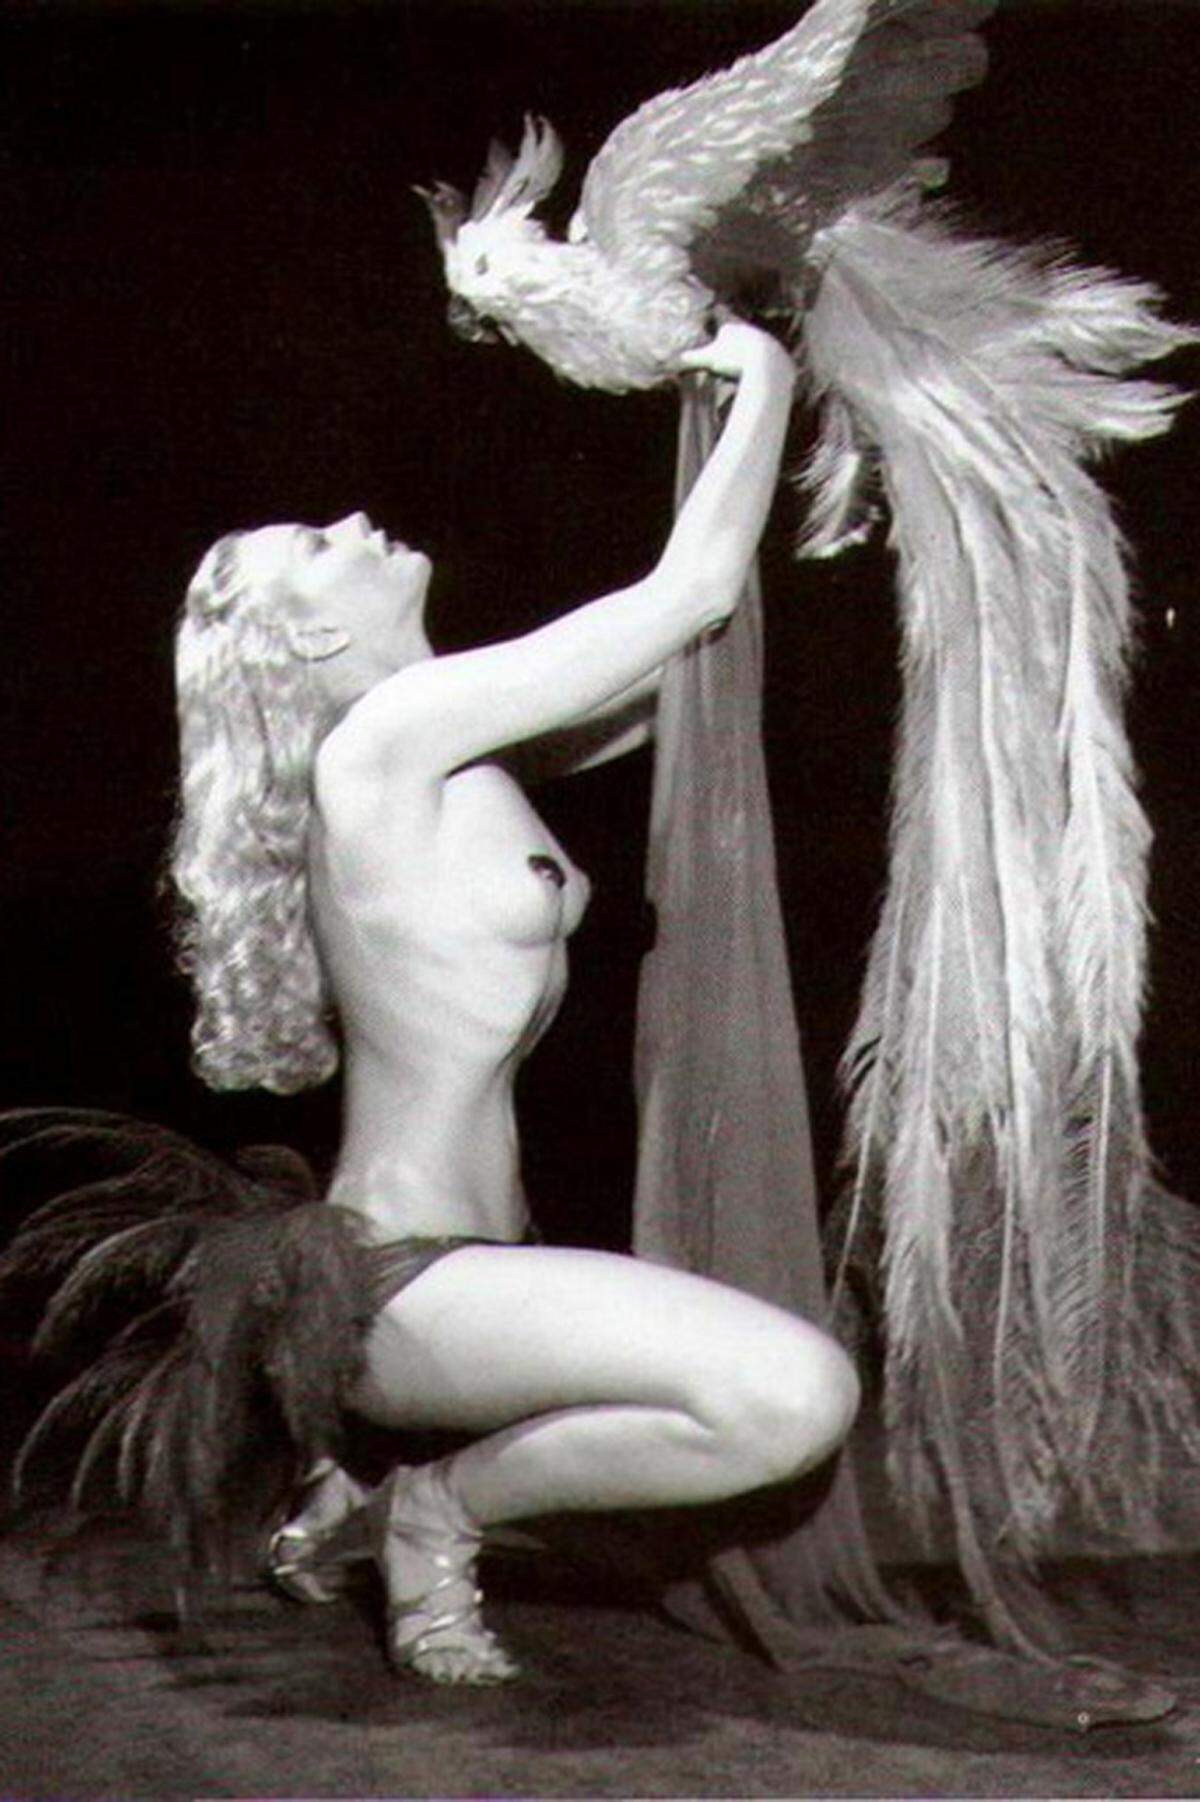 Die schöne Deutsch-Italienerin war eine der bekanntesten Burlesque-Stripperinnen der 40er und 50er Jahre. Noch vor Dita Von Teese hat sie sich eine Badewanne auf die Bühne geholt, per Angelhaken ließ sie sich von einem Bühnenarbeiter entkleiden, mit einem Rückwärts-Striptease revolutionierte sie ihr Fach. Lili St. Cyr wurde in dem Lied "Rose Tint My World" (Rocky Horror Picture Show) verewigt.